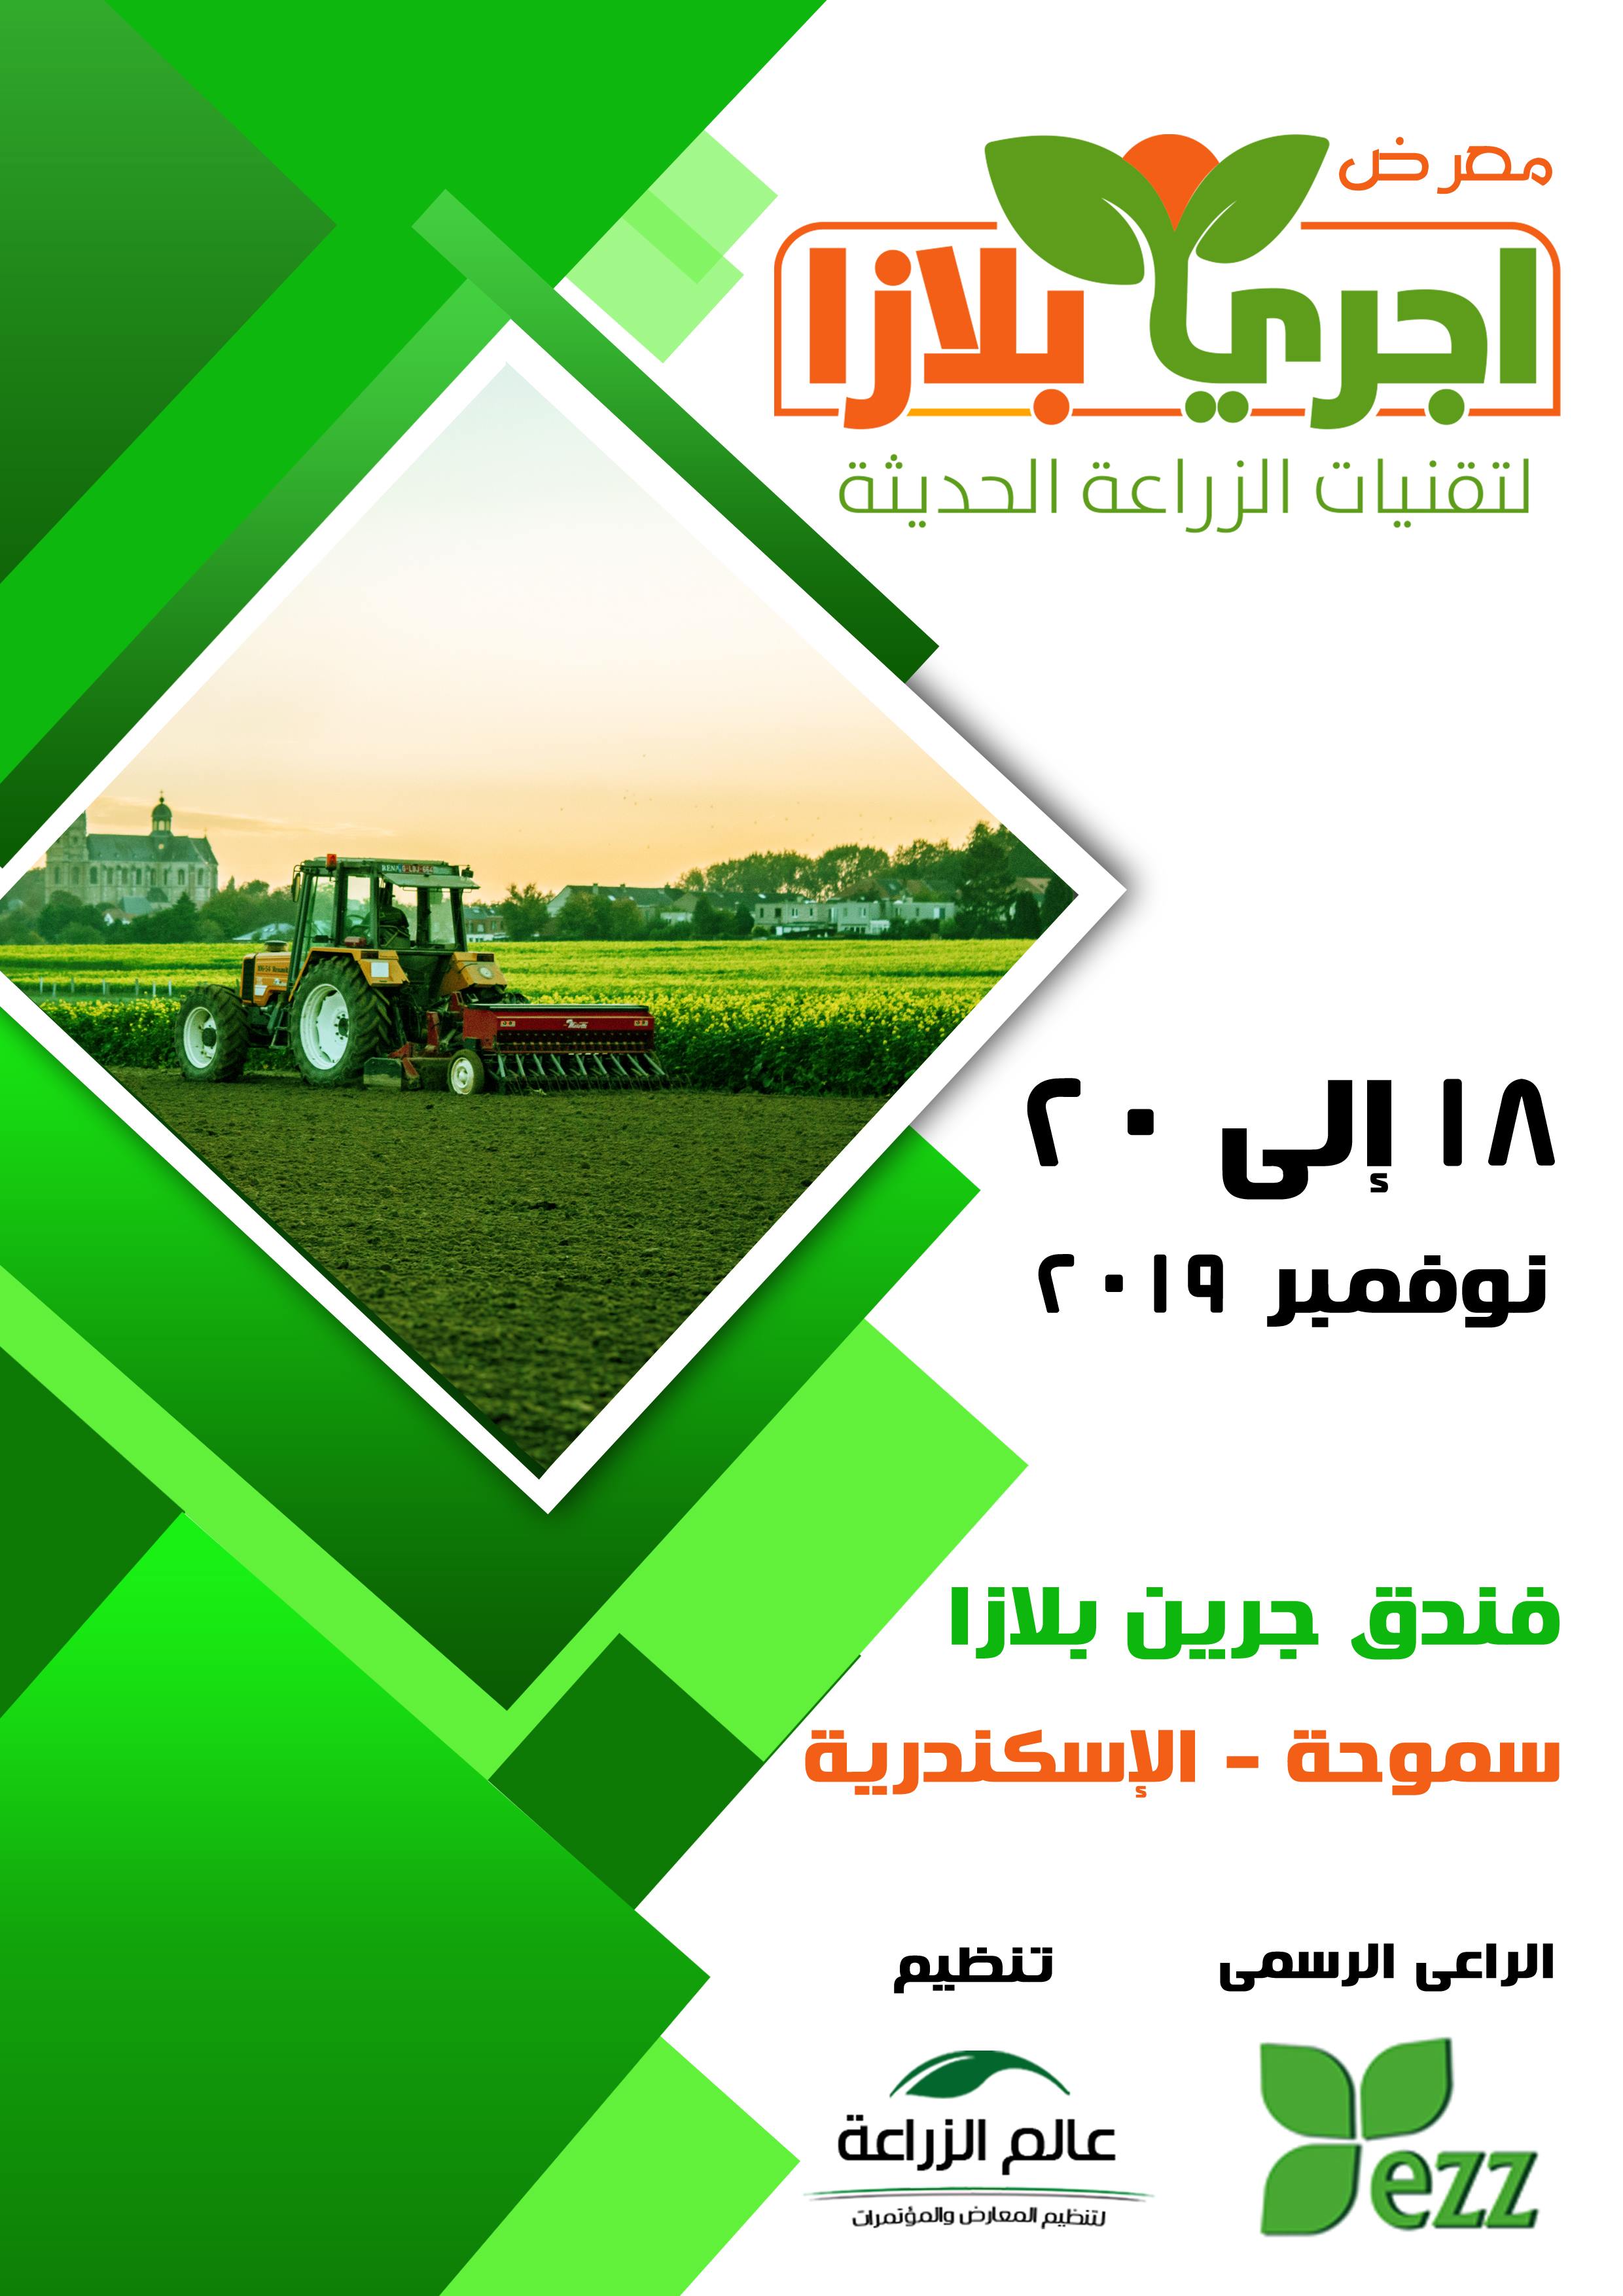 صورة مؤسسة عالم الزراعة تنظم معرض اجري بلازا بالاسكندرية 18 الى 20 نوفمبر